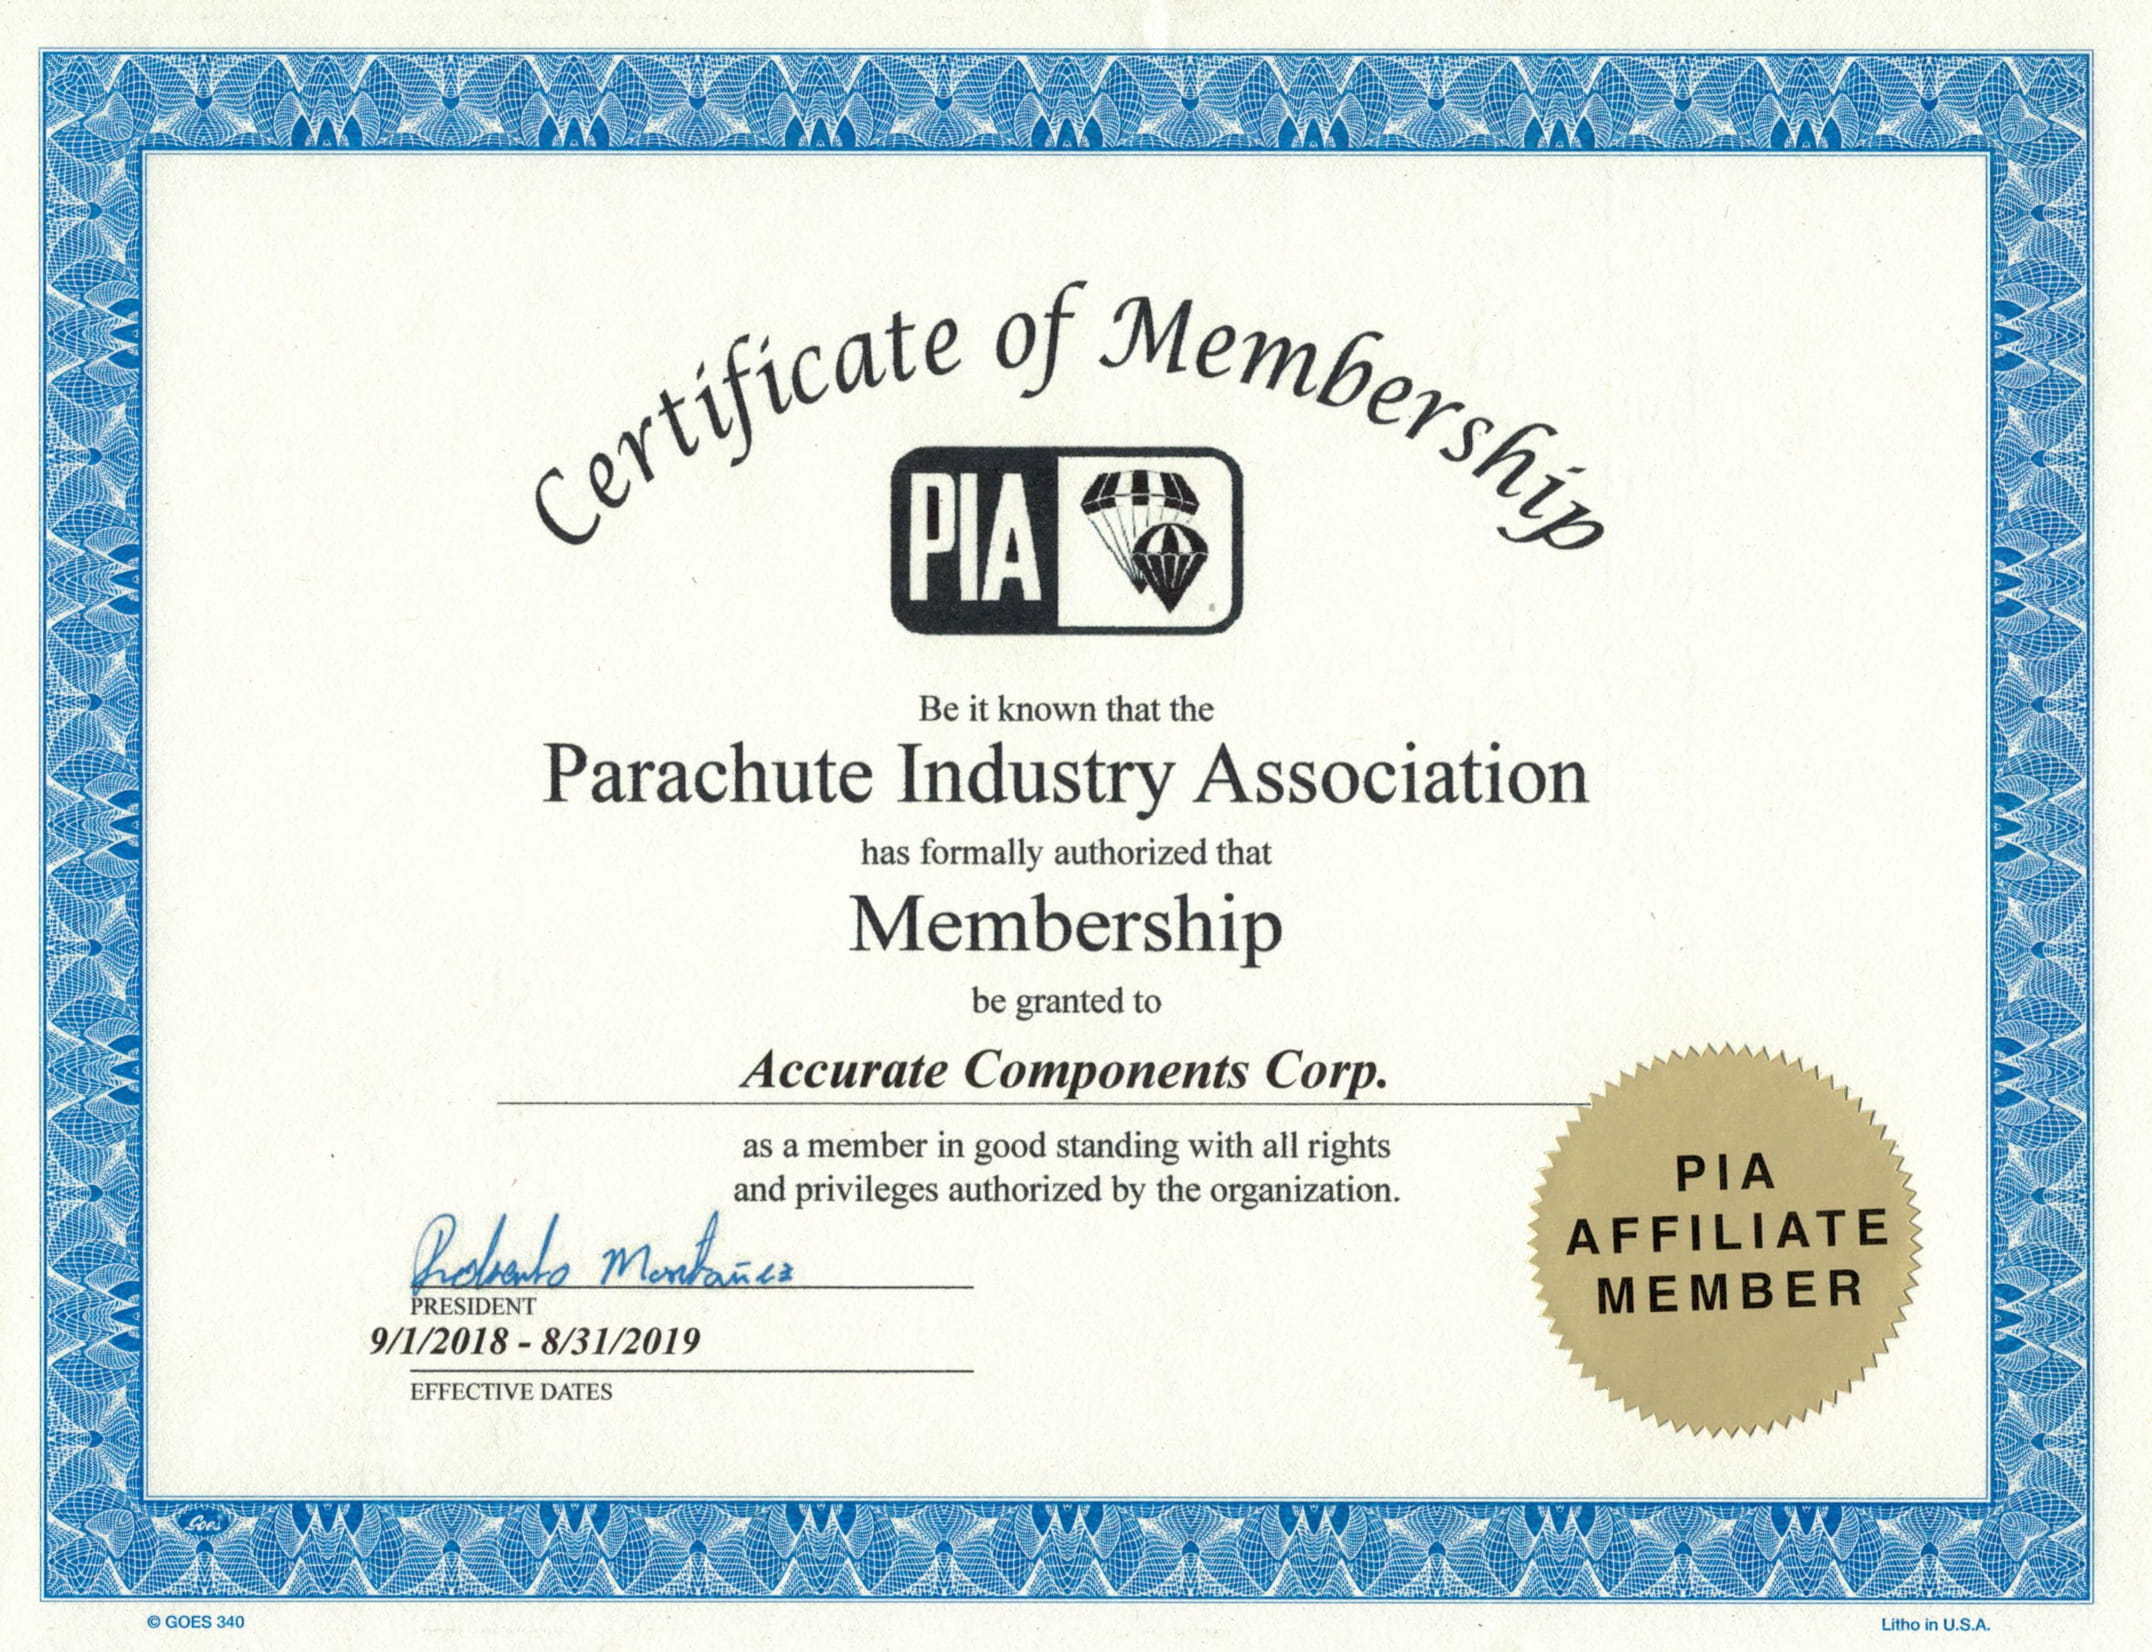 pia-affiliate-member